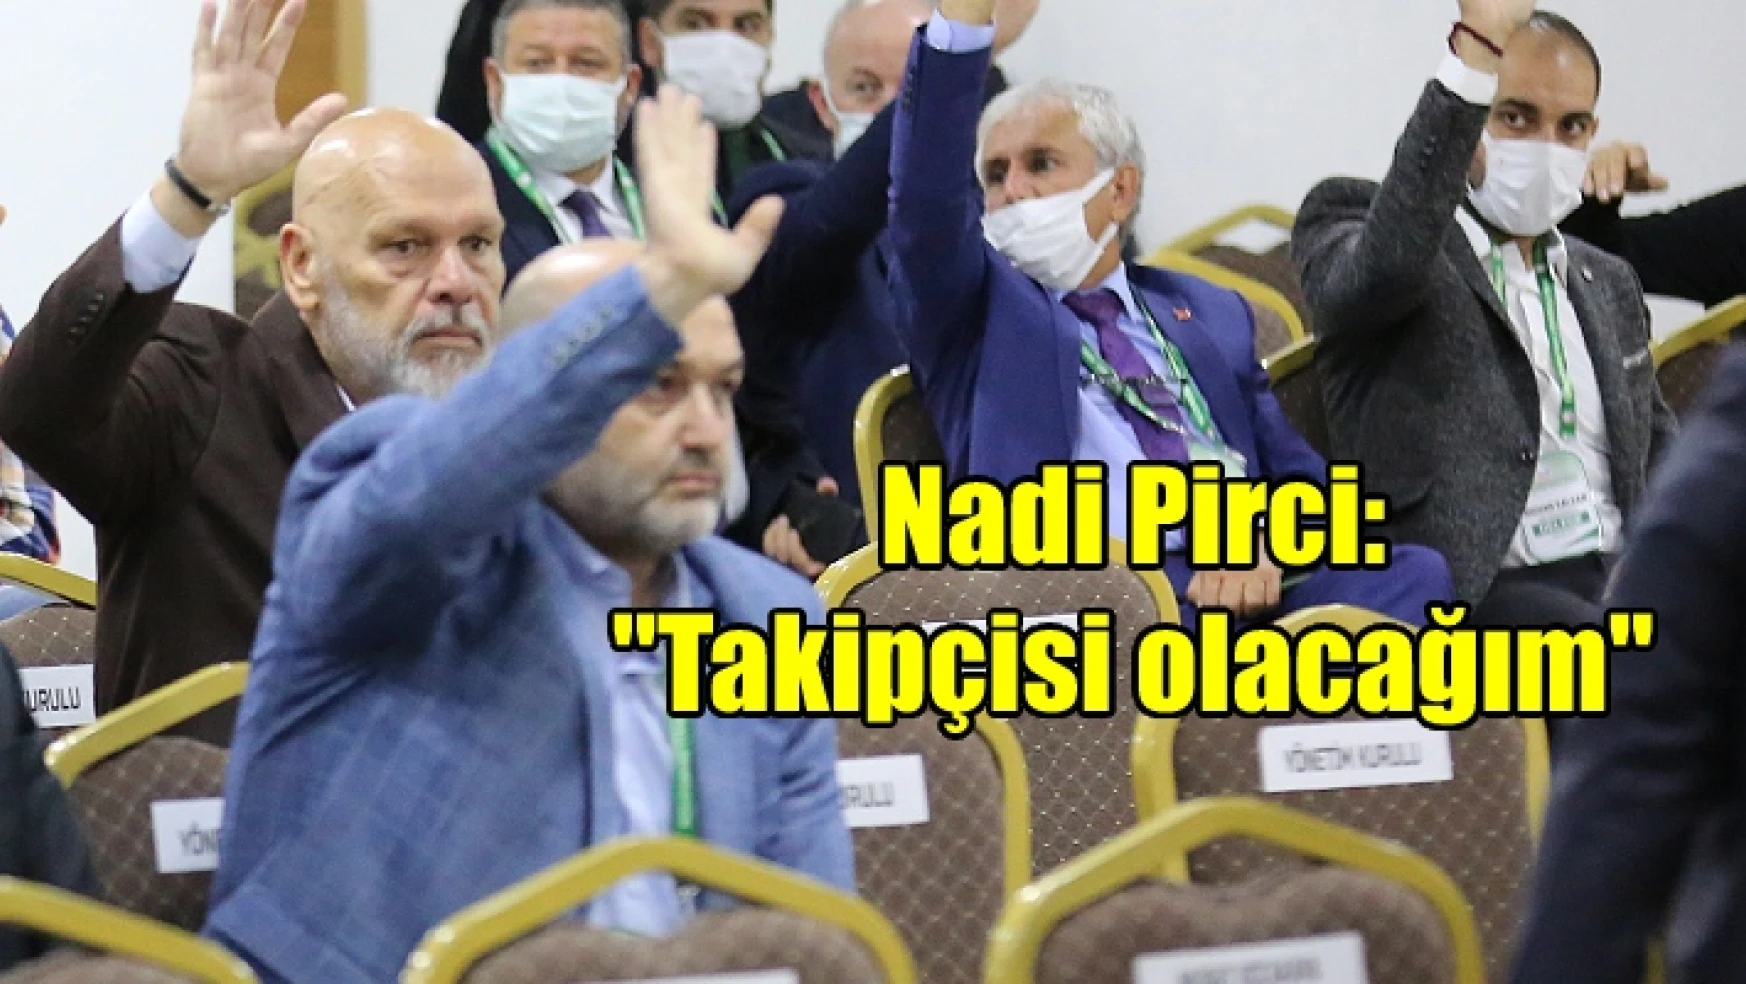 Eski yönetim kurulu üyesi Nadi Pirci’den açıklama: “Takipçisi olacağım”